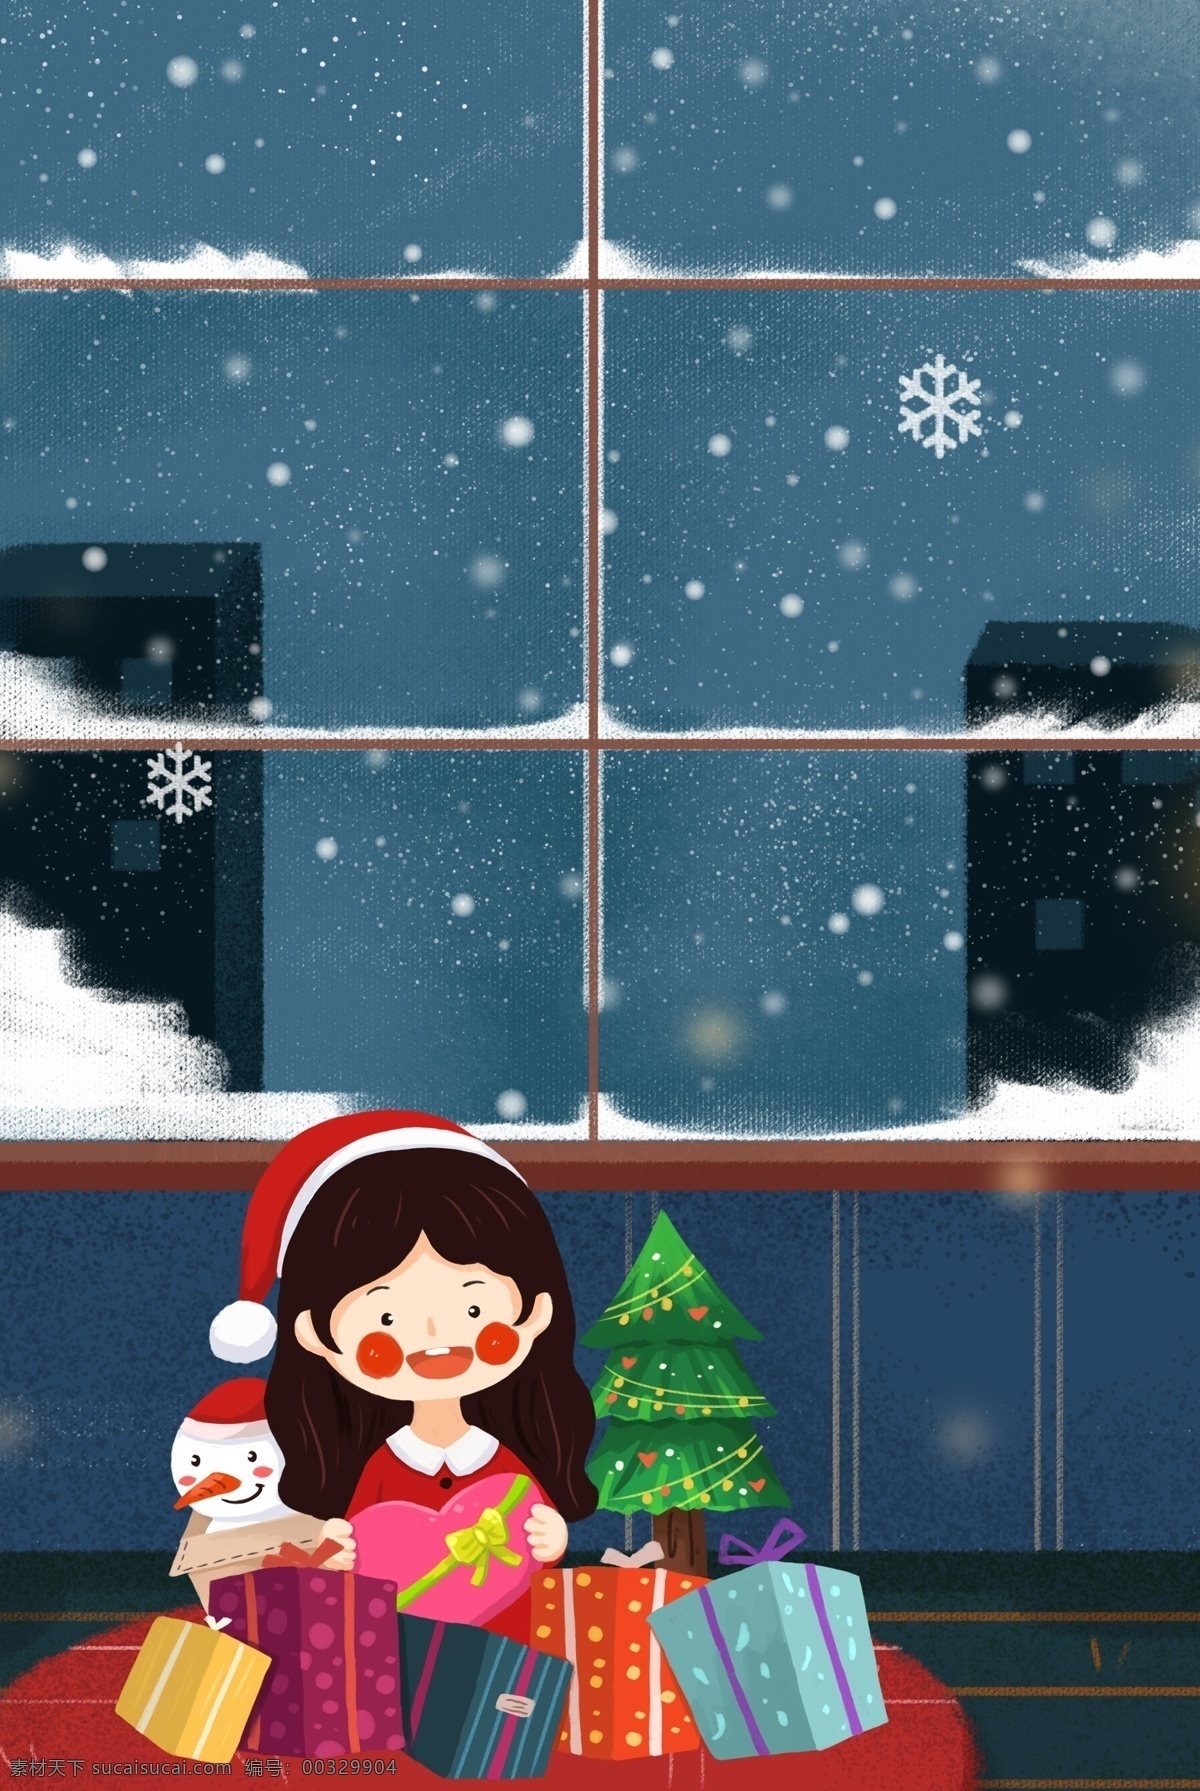 圣诞节 室内 拆 礼物 女孩 插 画风 海报 圣诞树 圣诞礼物 家居 窗户 冬天 促销海报